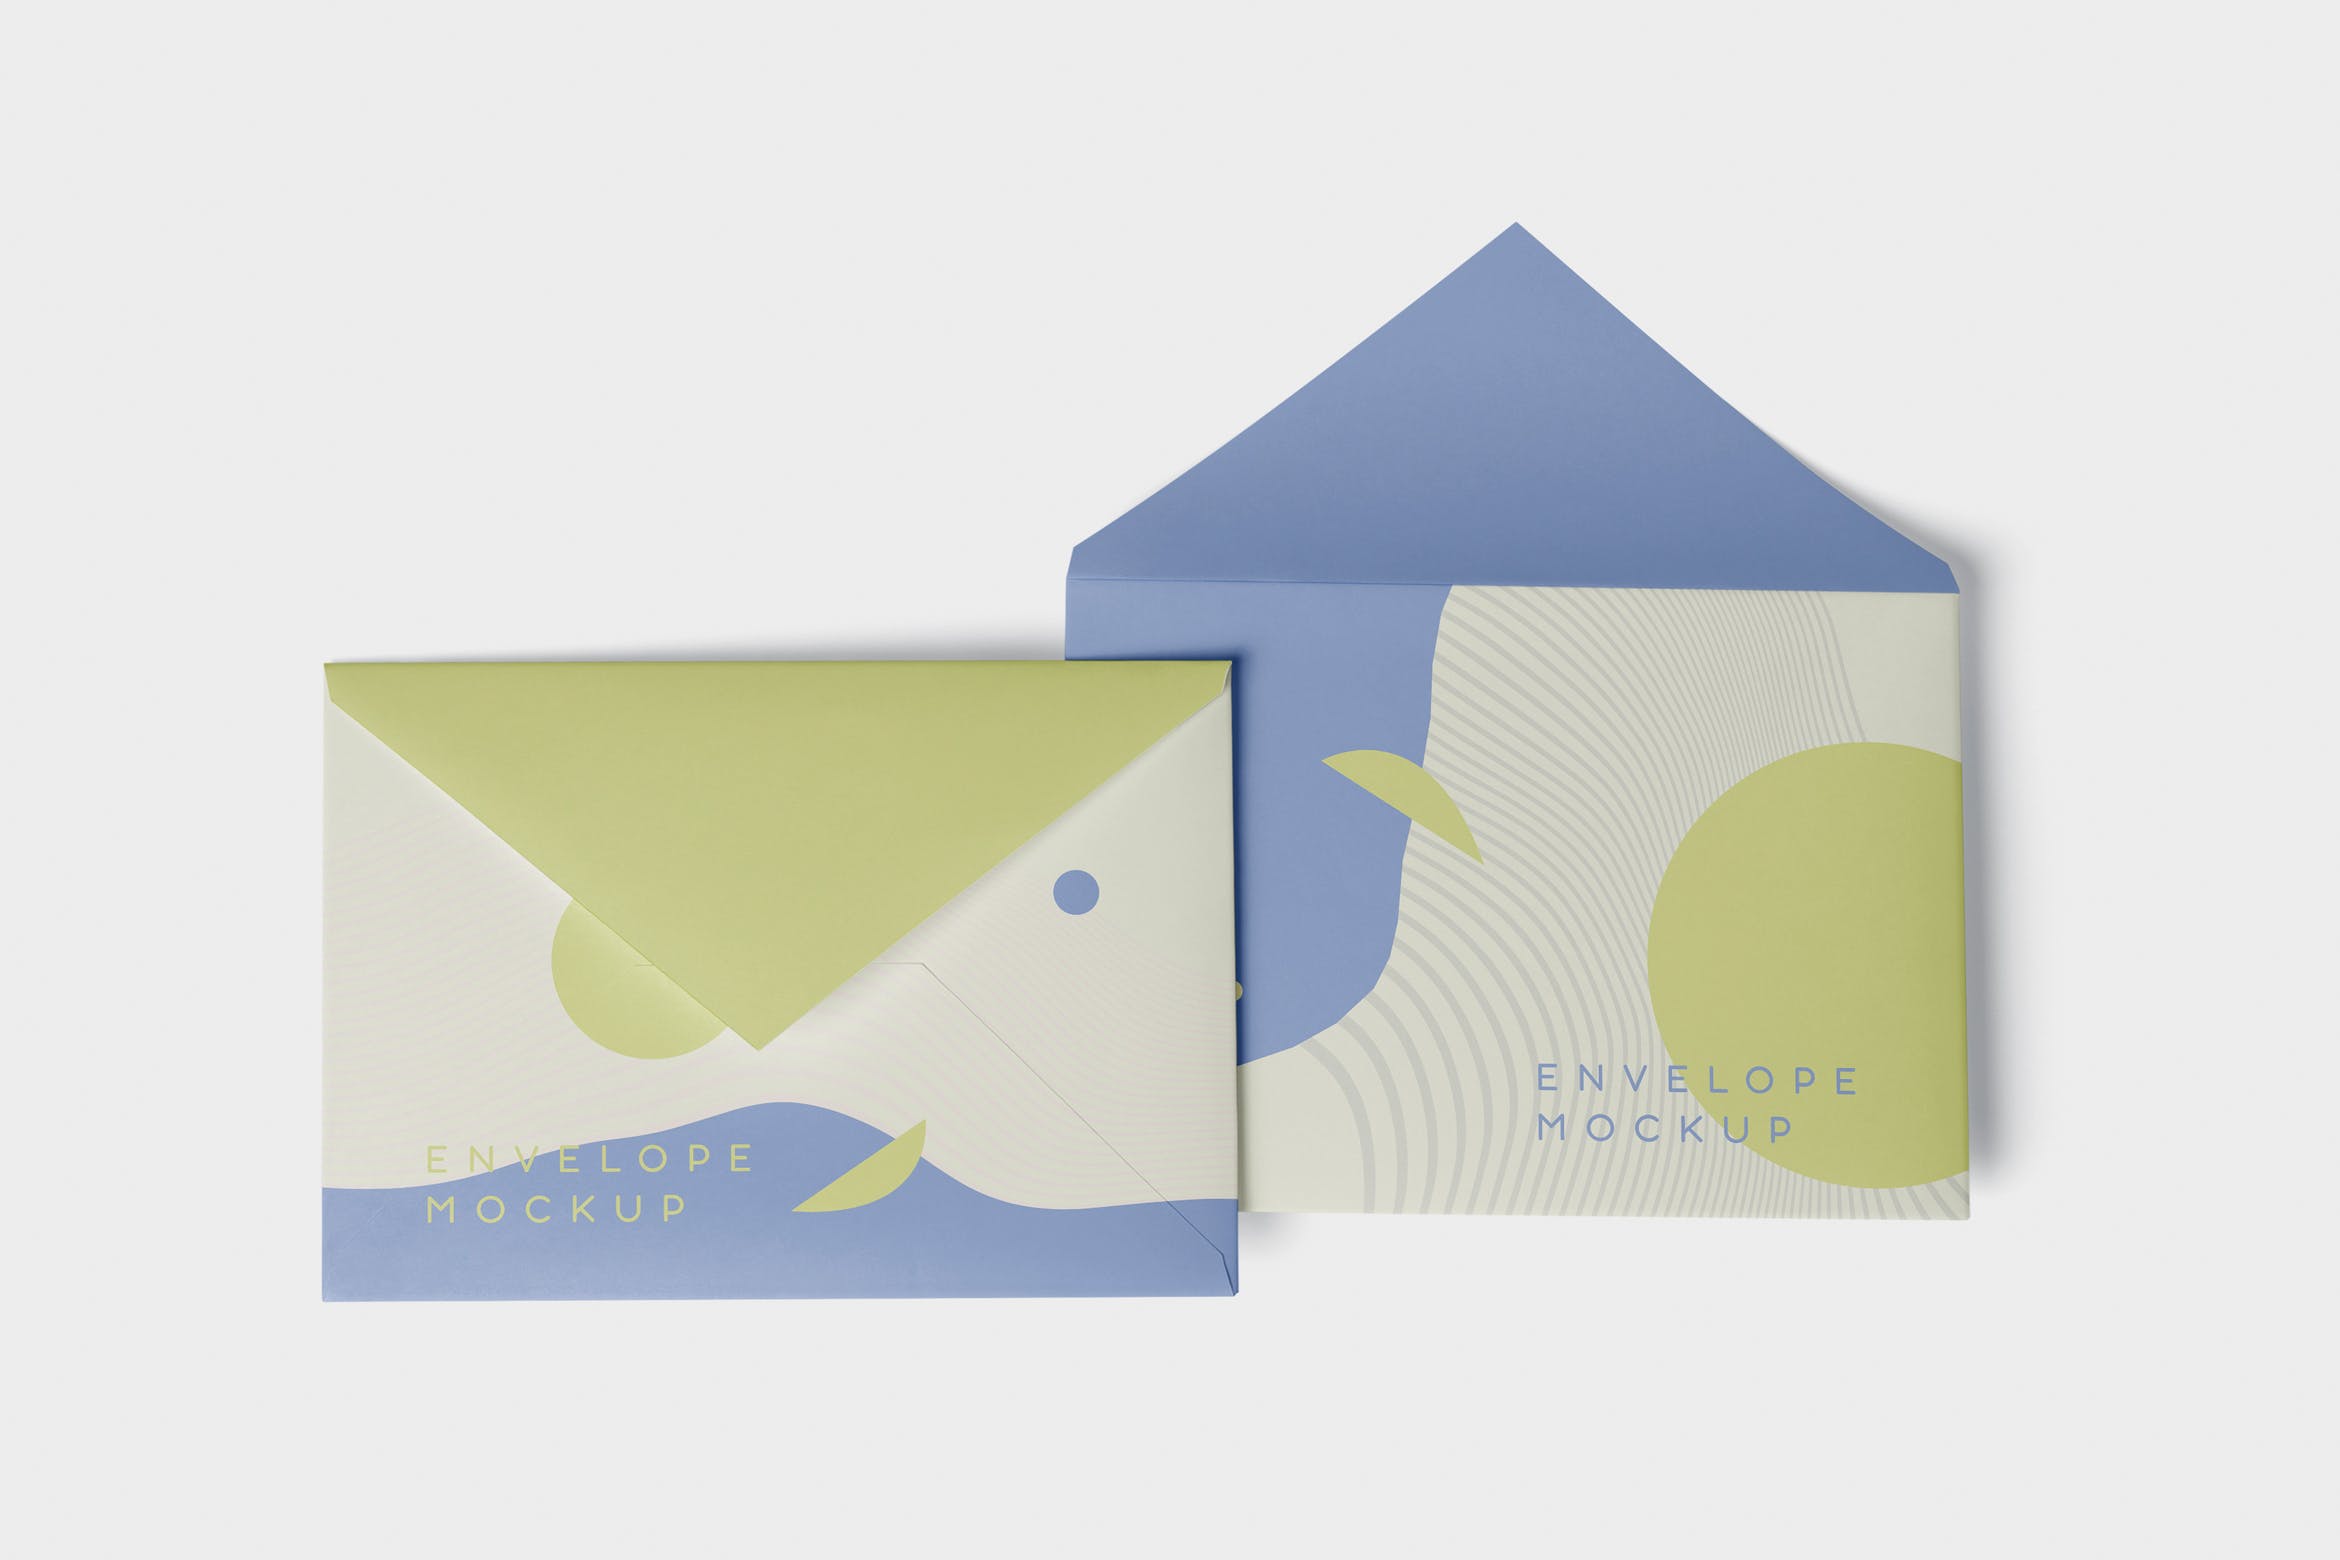 高端企业信封外观设计图蚂蚁素材精选模板 Envelope C5 – C6 Mock-Up Set插图